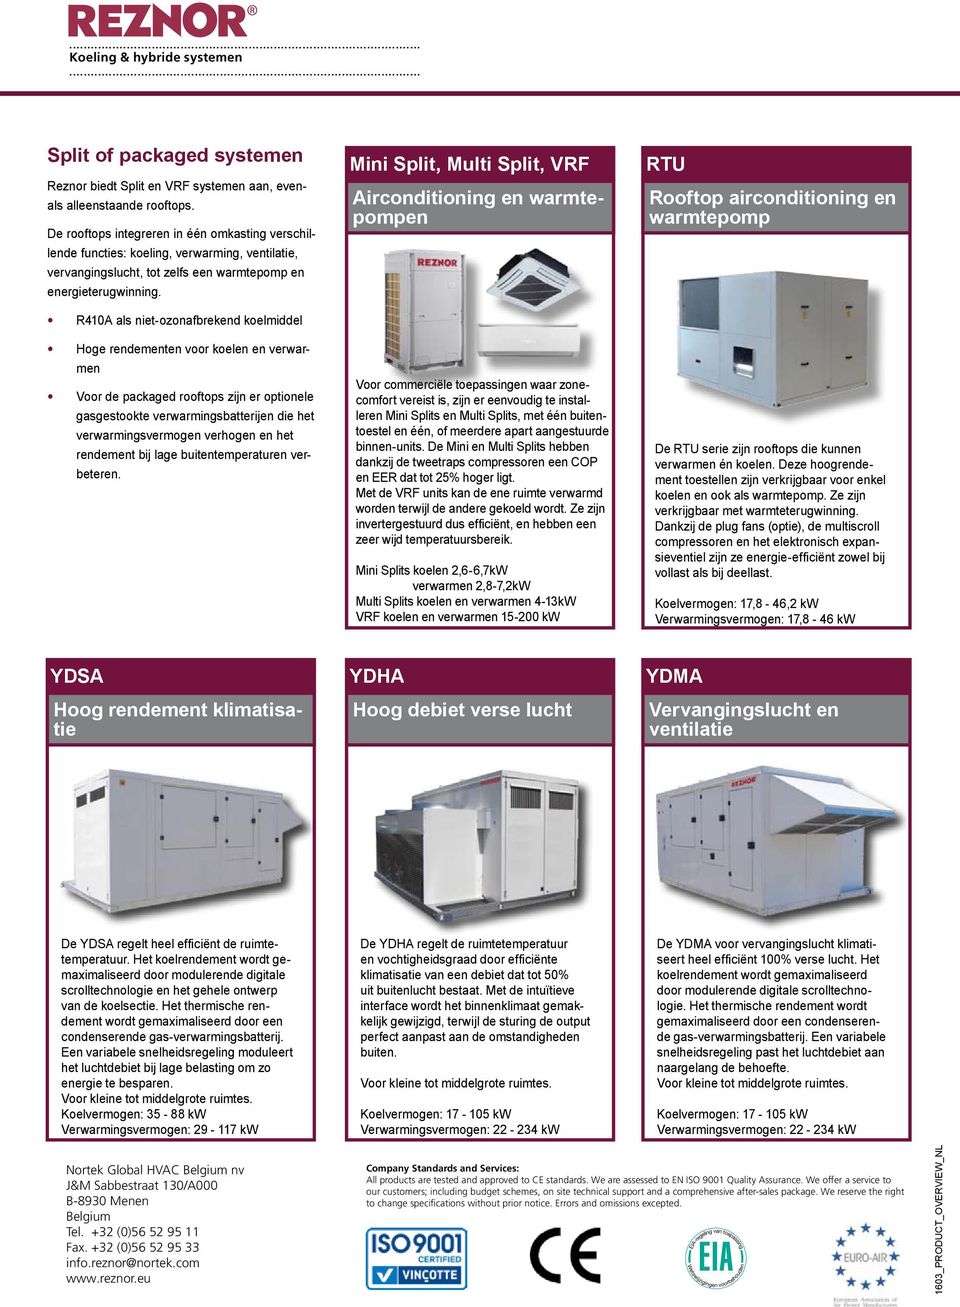 R410A als niet-ozonafbrekend koelmiddel Hoge rendementen voor koelen en verwarmen Voor de packaged rooftops zijn er optionele gasgestookte verwarmingsbatterijen die het verwarmingsvermogen verhogen